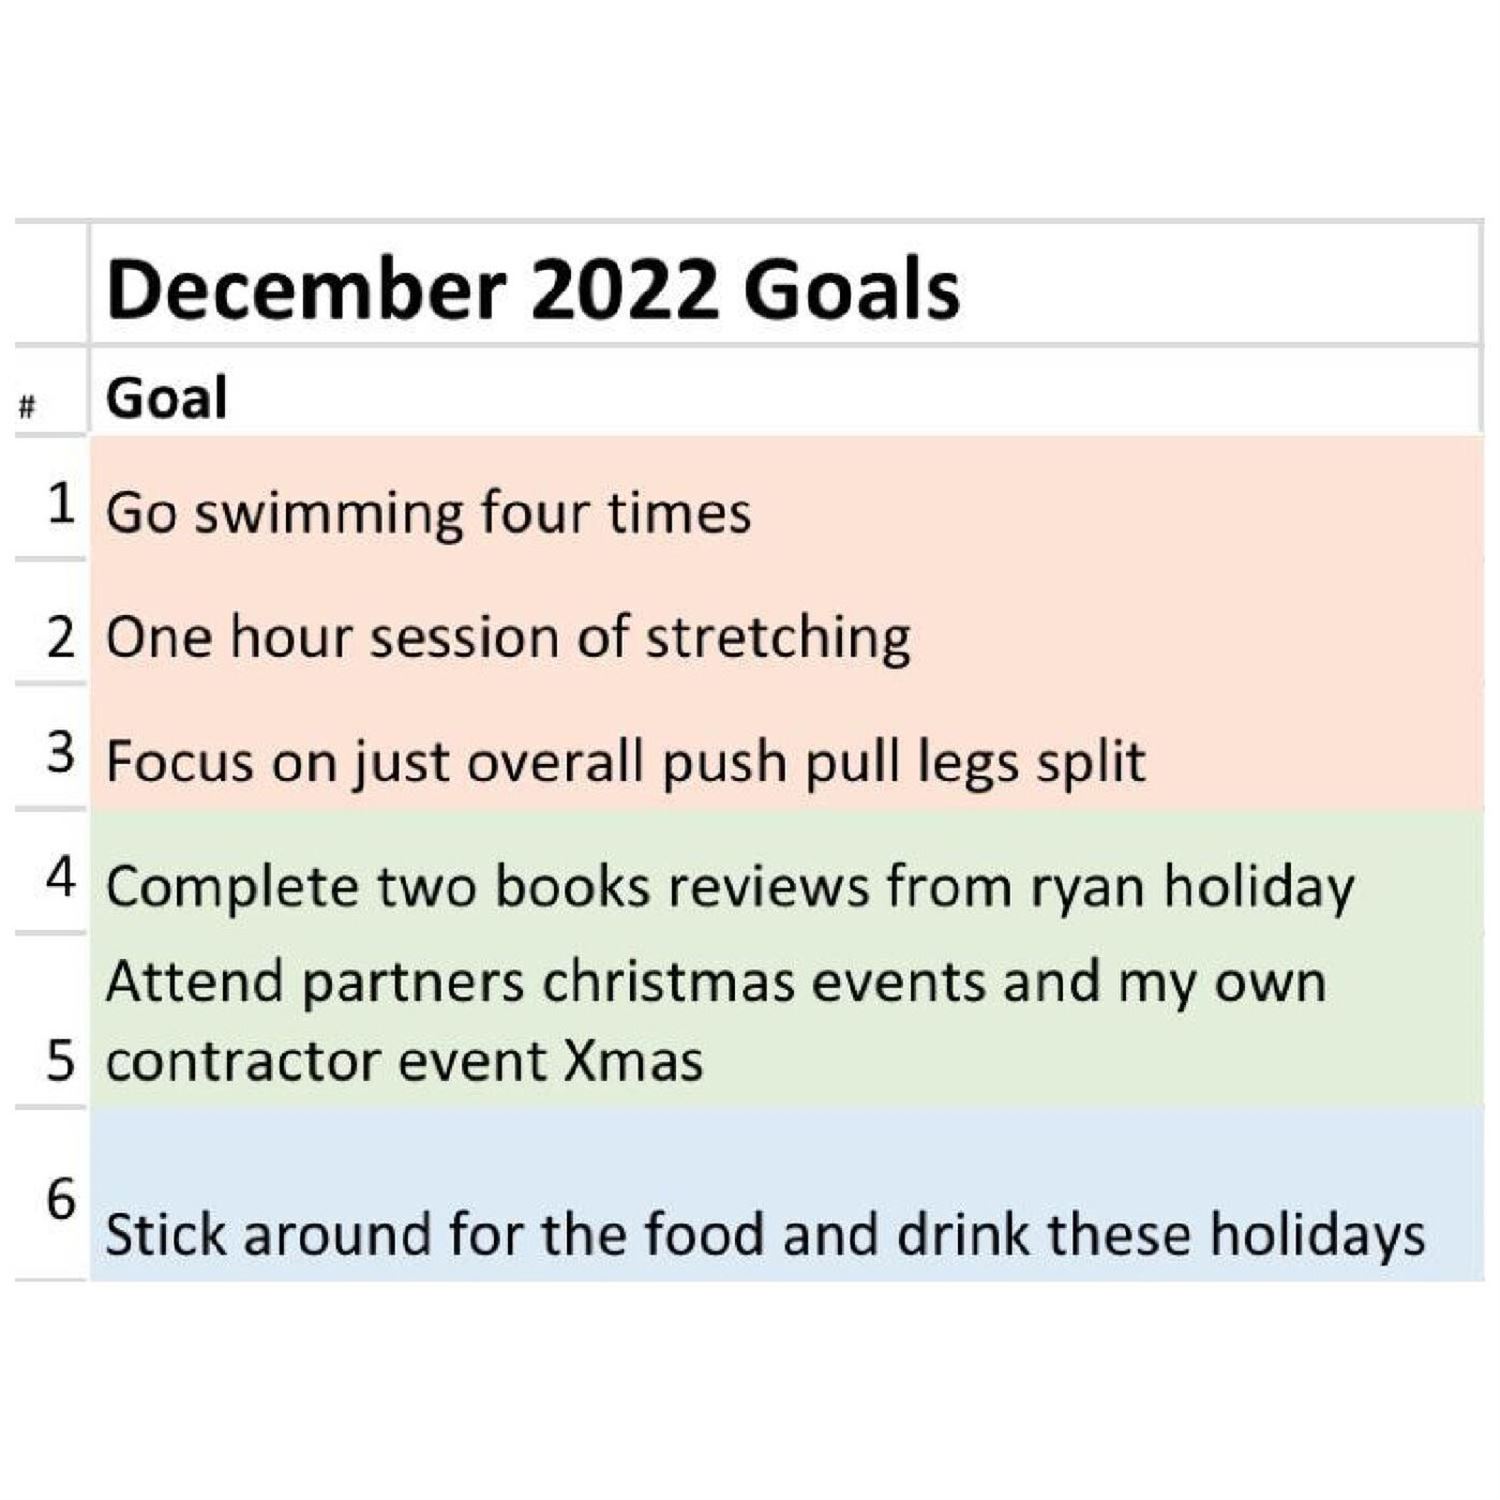 Juan's December Goals